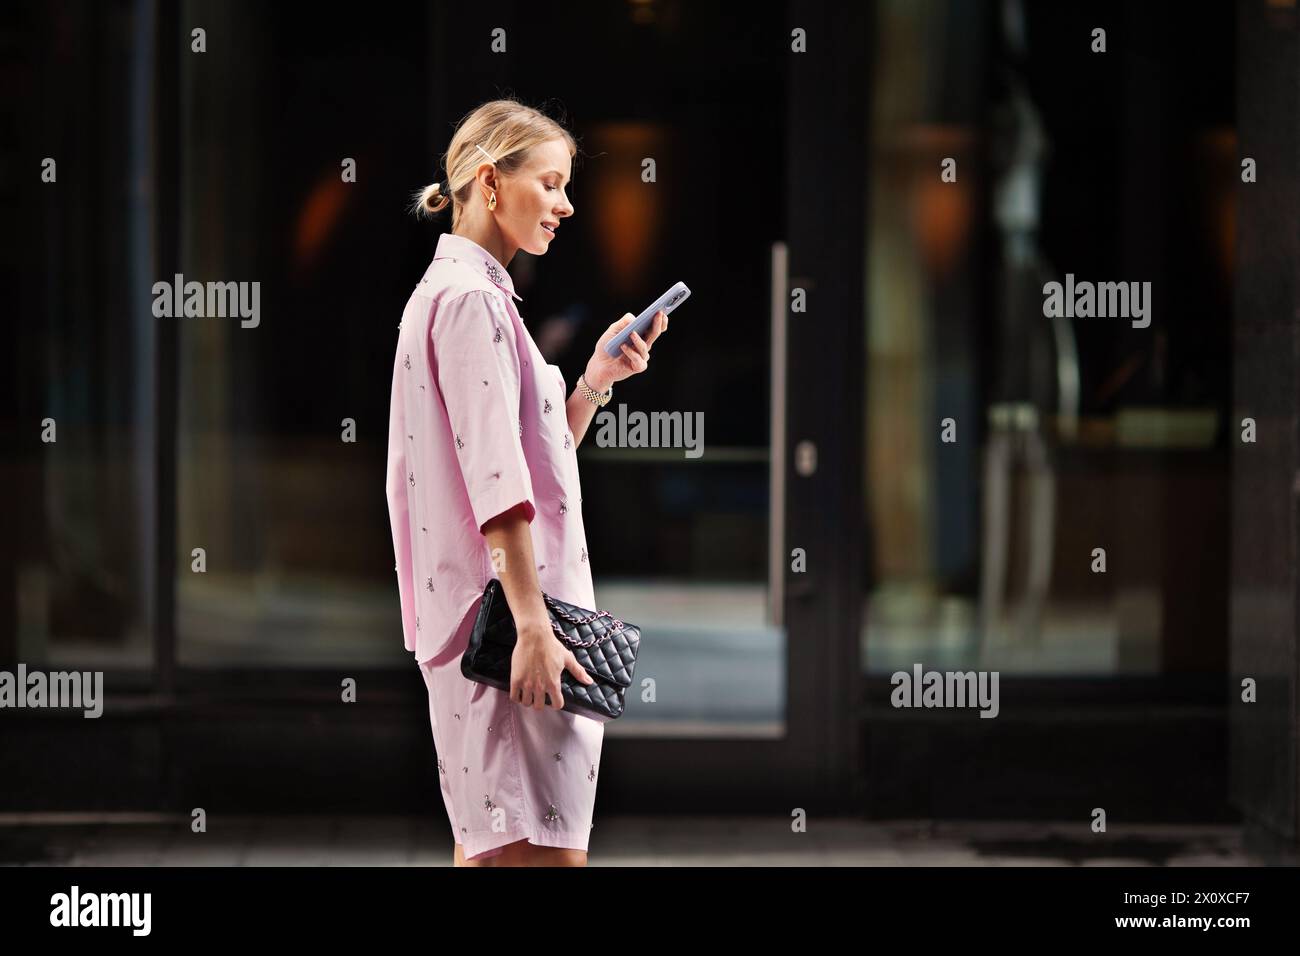 Junge, trendige Frau, die auf ihrem Handy SMS schreibt, fasziniert vom mobilen Bildschirm, während sie auf einer Stadtstraße steht. Städtische Vernetzung und moderner Lifestyle. Stockfoto